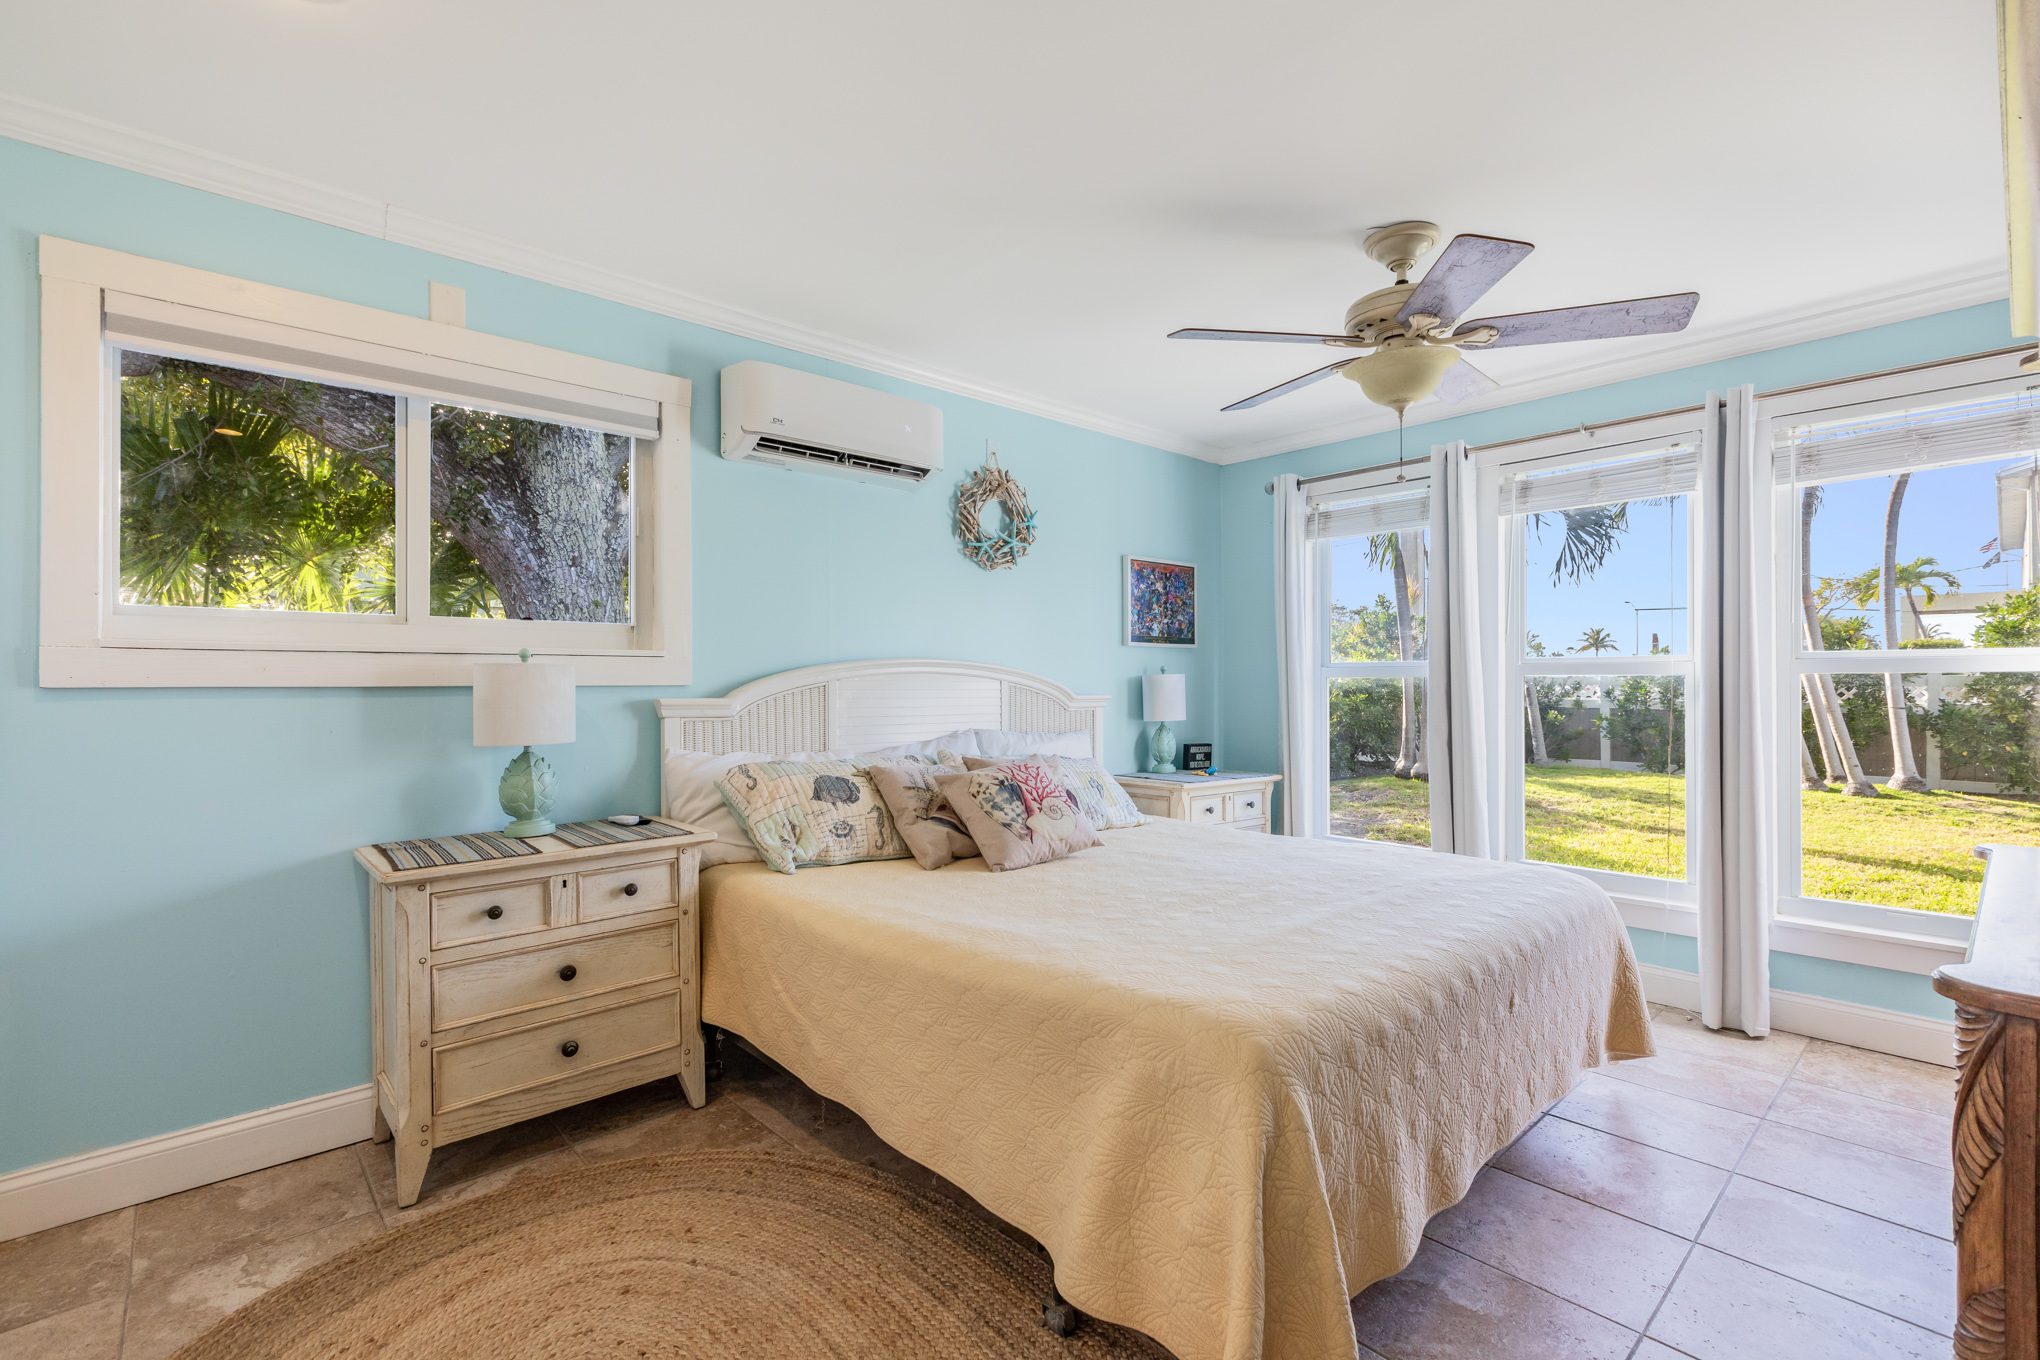 Key West Homes for Sale: 2200 Patterson Avenue, Key West